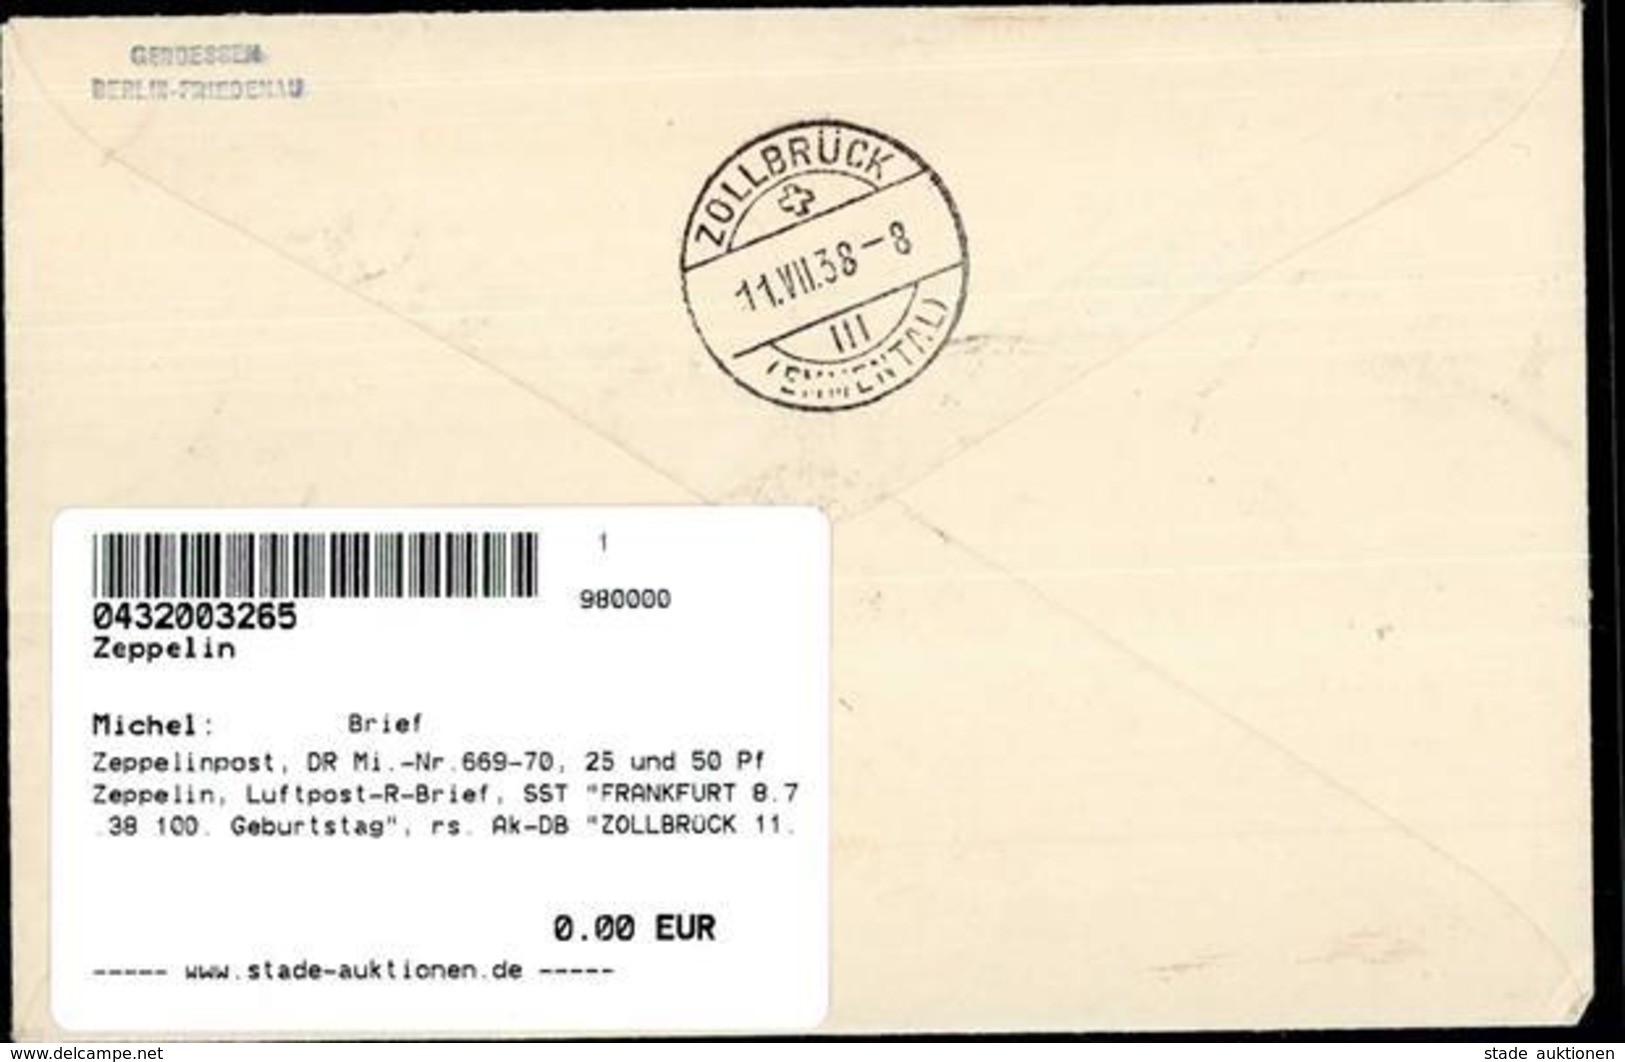 Zeppelinpost, DR Mi.-Nr.669-70, 25 Und 50 Pf Zeppelin, Luftpost-R-Brief, SST FRANKFURT 8.7.38 100. Geburtstag", Rs. Ak-D - Dirigeables